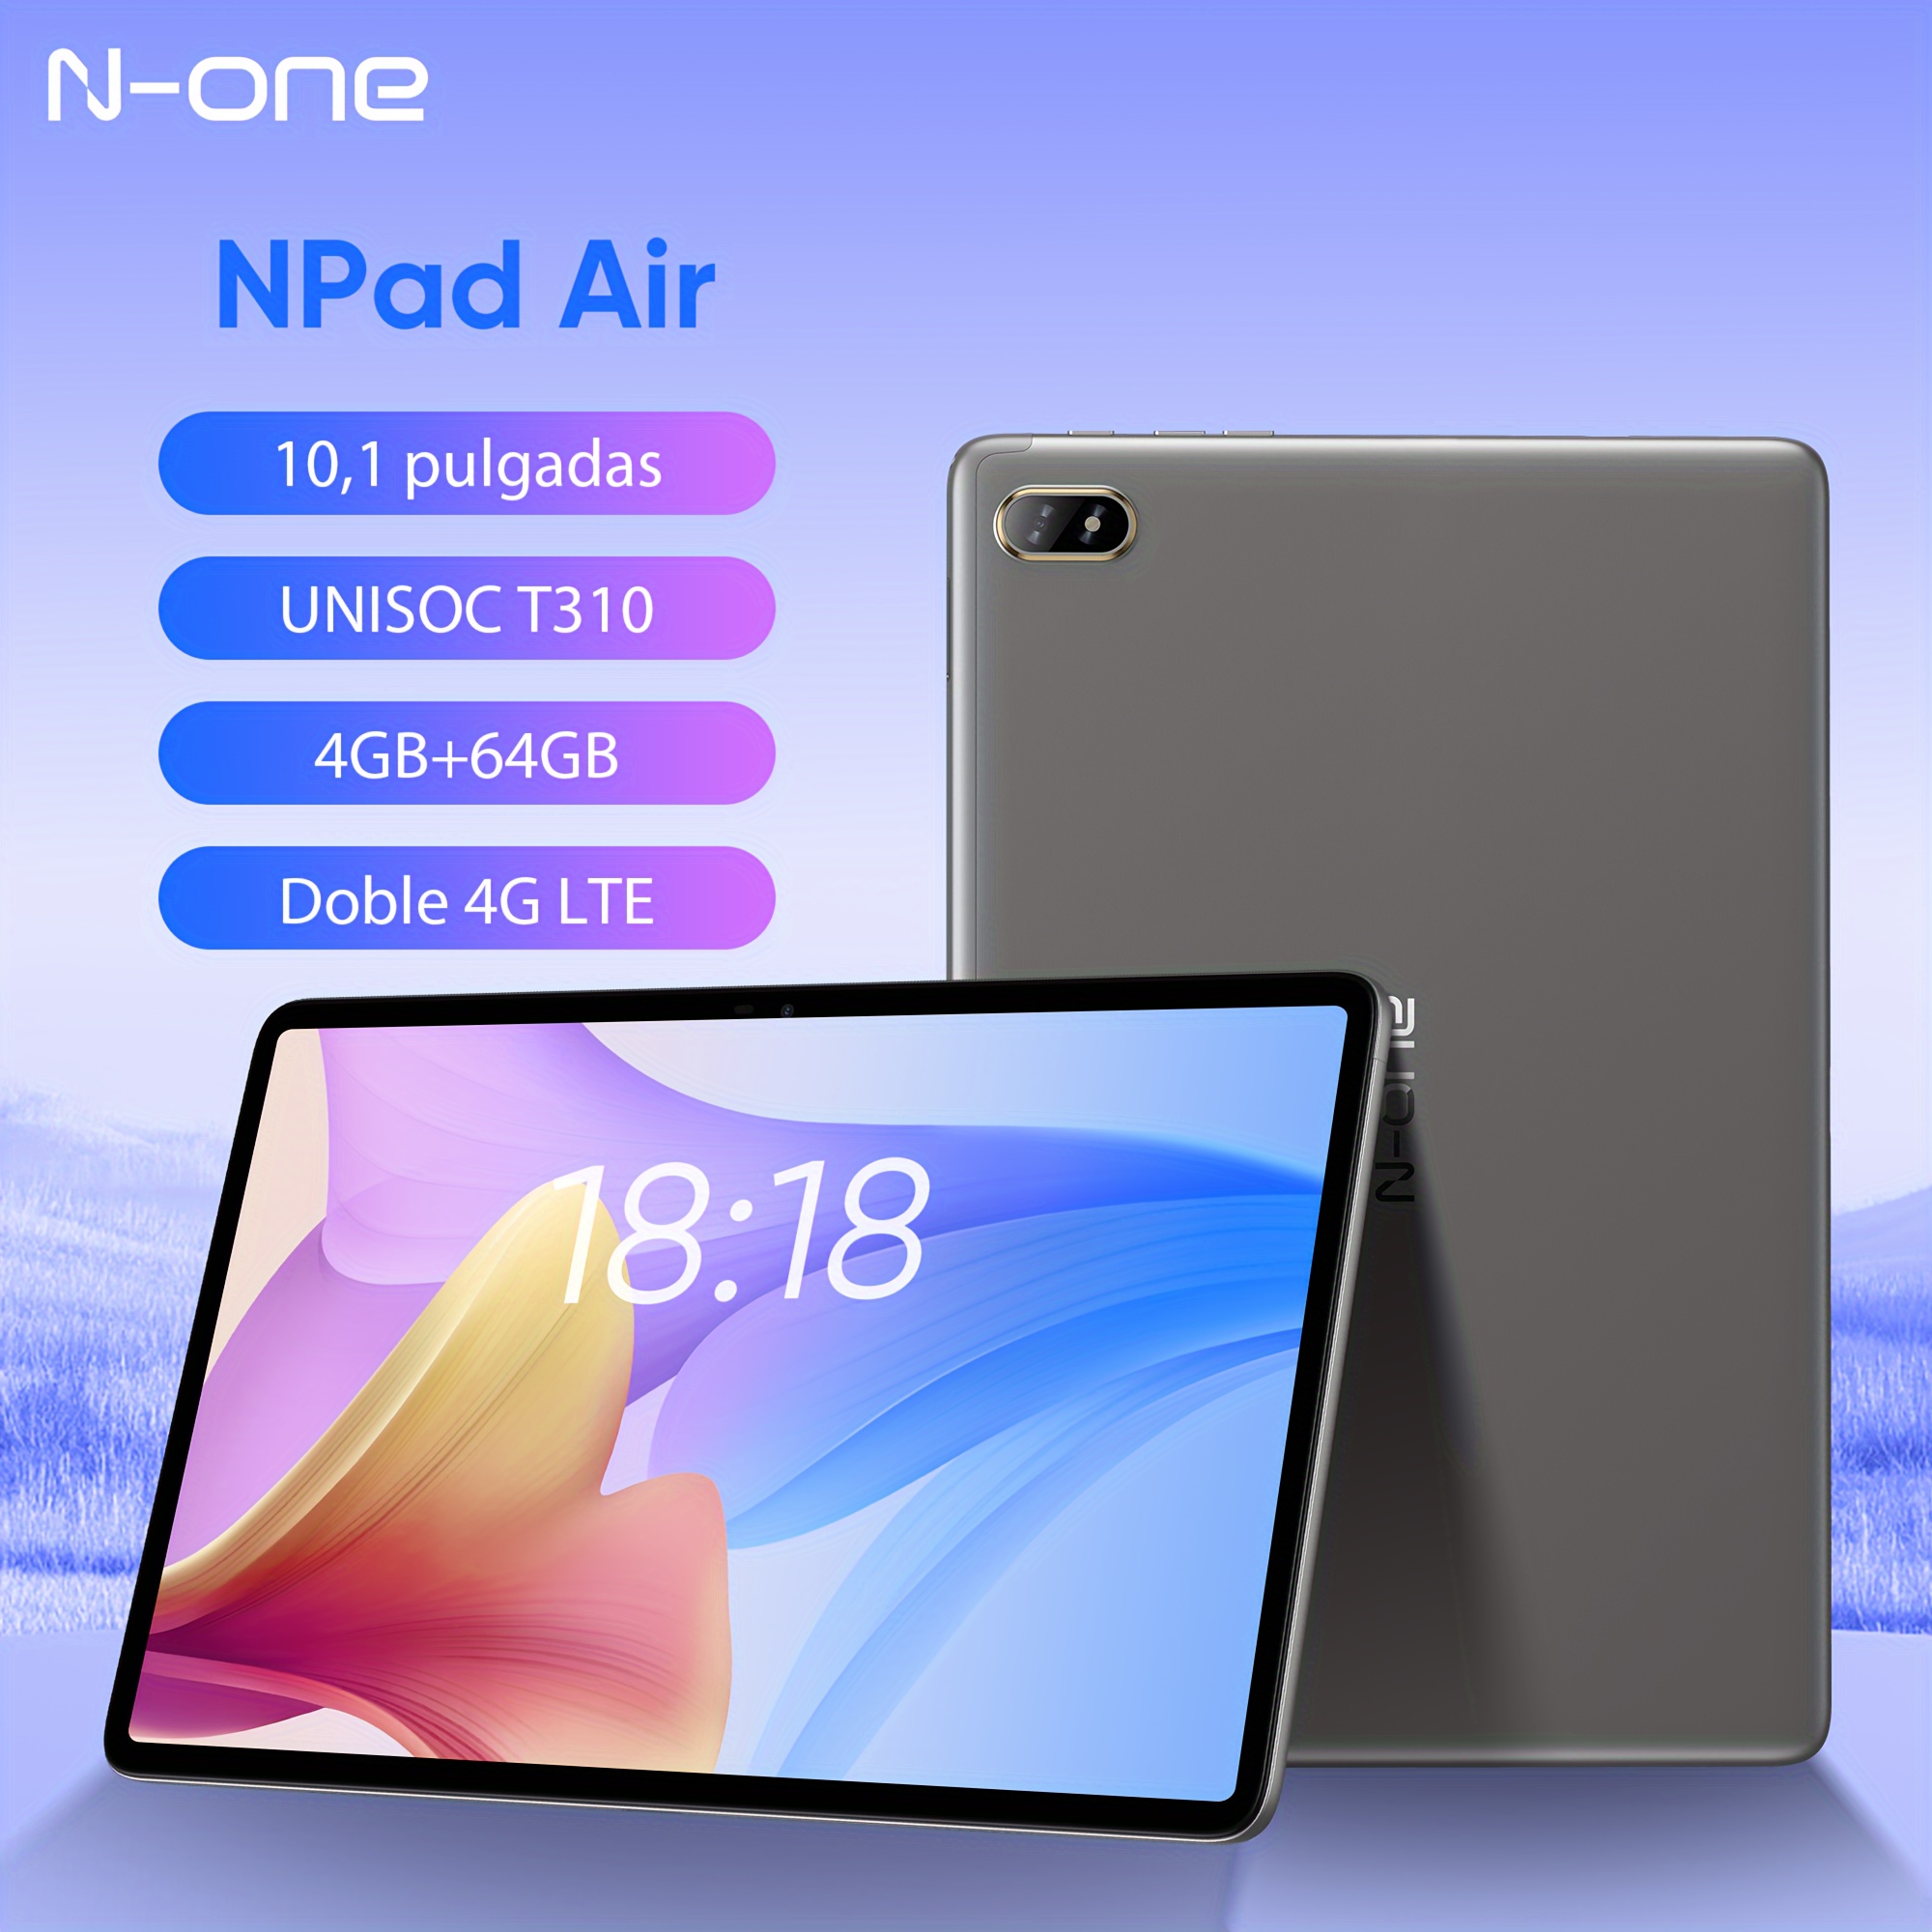 Tablet Pritom L8 Plus De 8 Pulgadas Android 13 (a523 8-core 1.8ghz